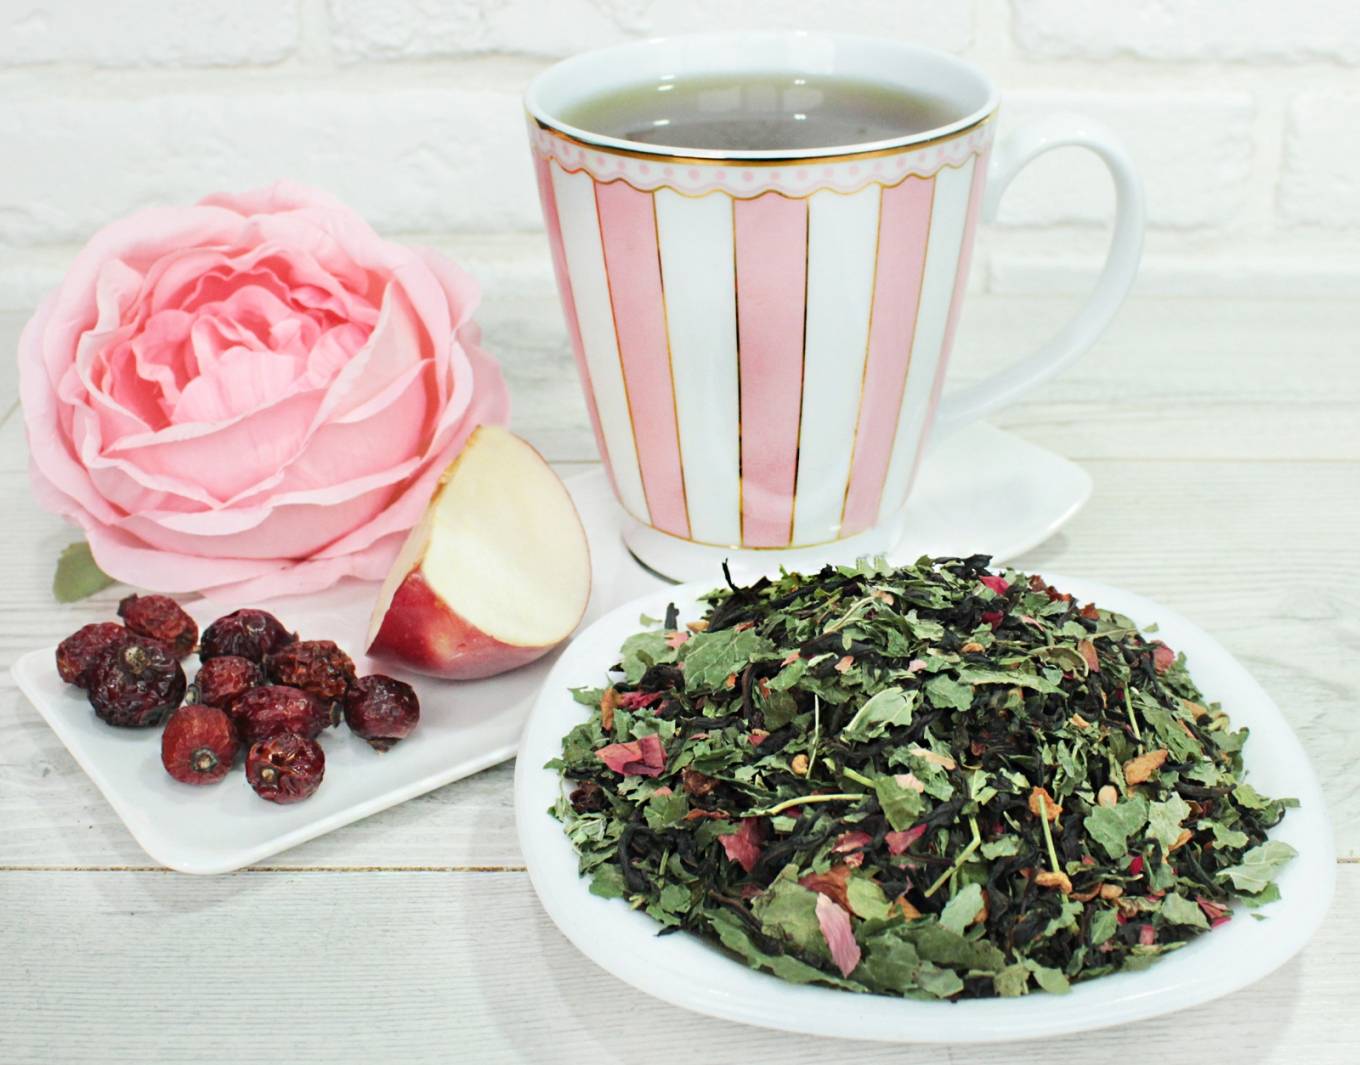 Рецепты чая с барбарисом и его полезные свойства